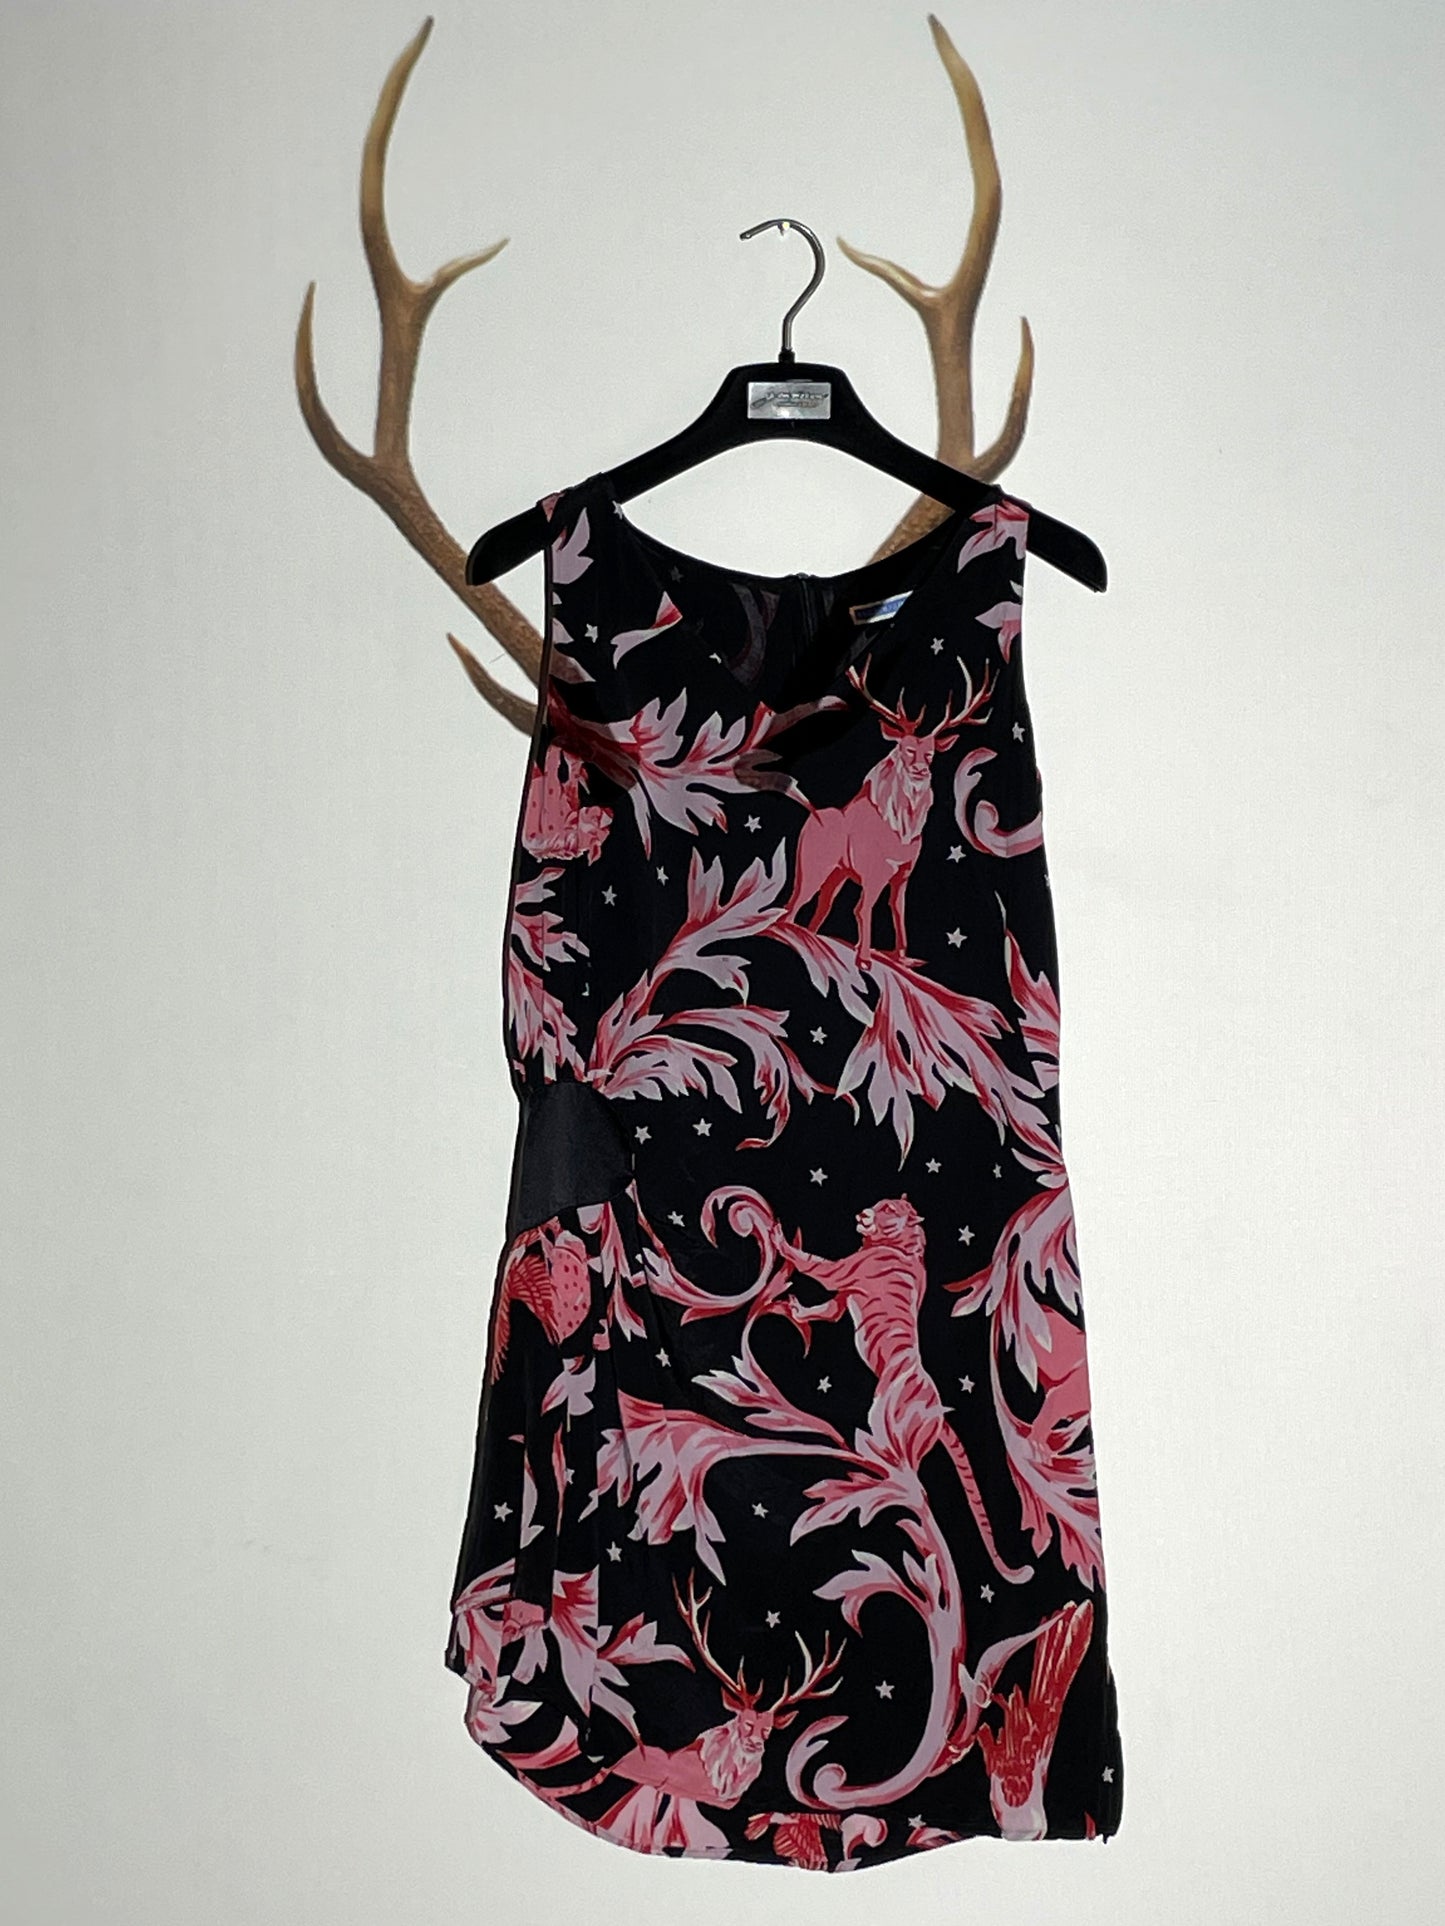 Eley Kishimoto 2000's silk tiger and deer print dress